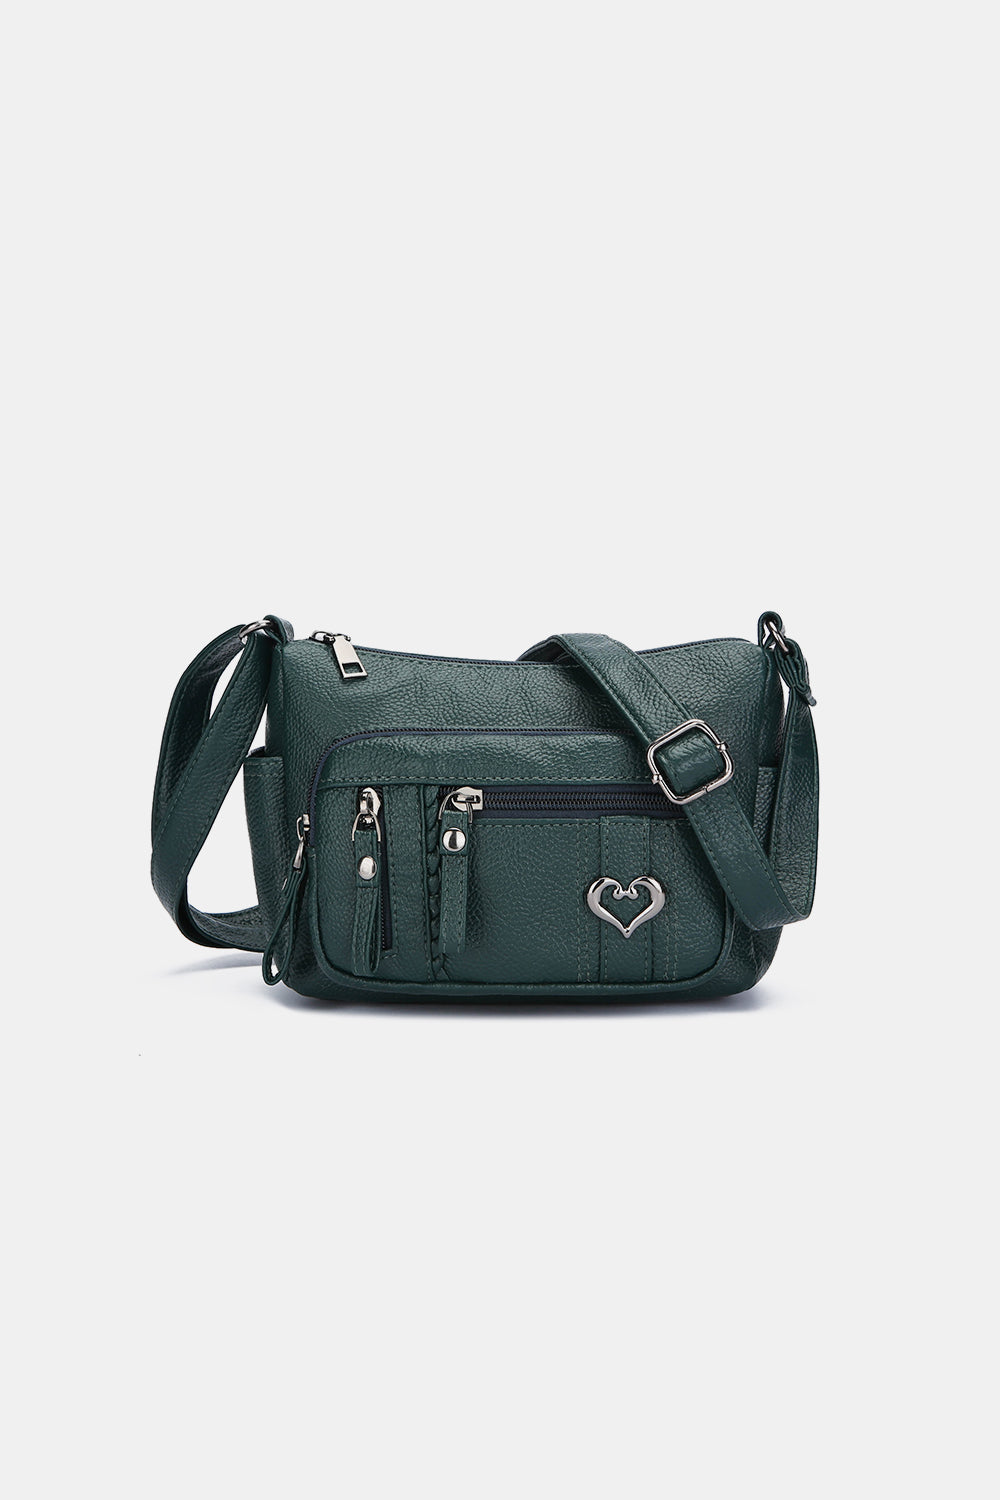 PU Leather Adjustable Strap Shoulder Bag Dark Green One Size